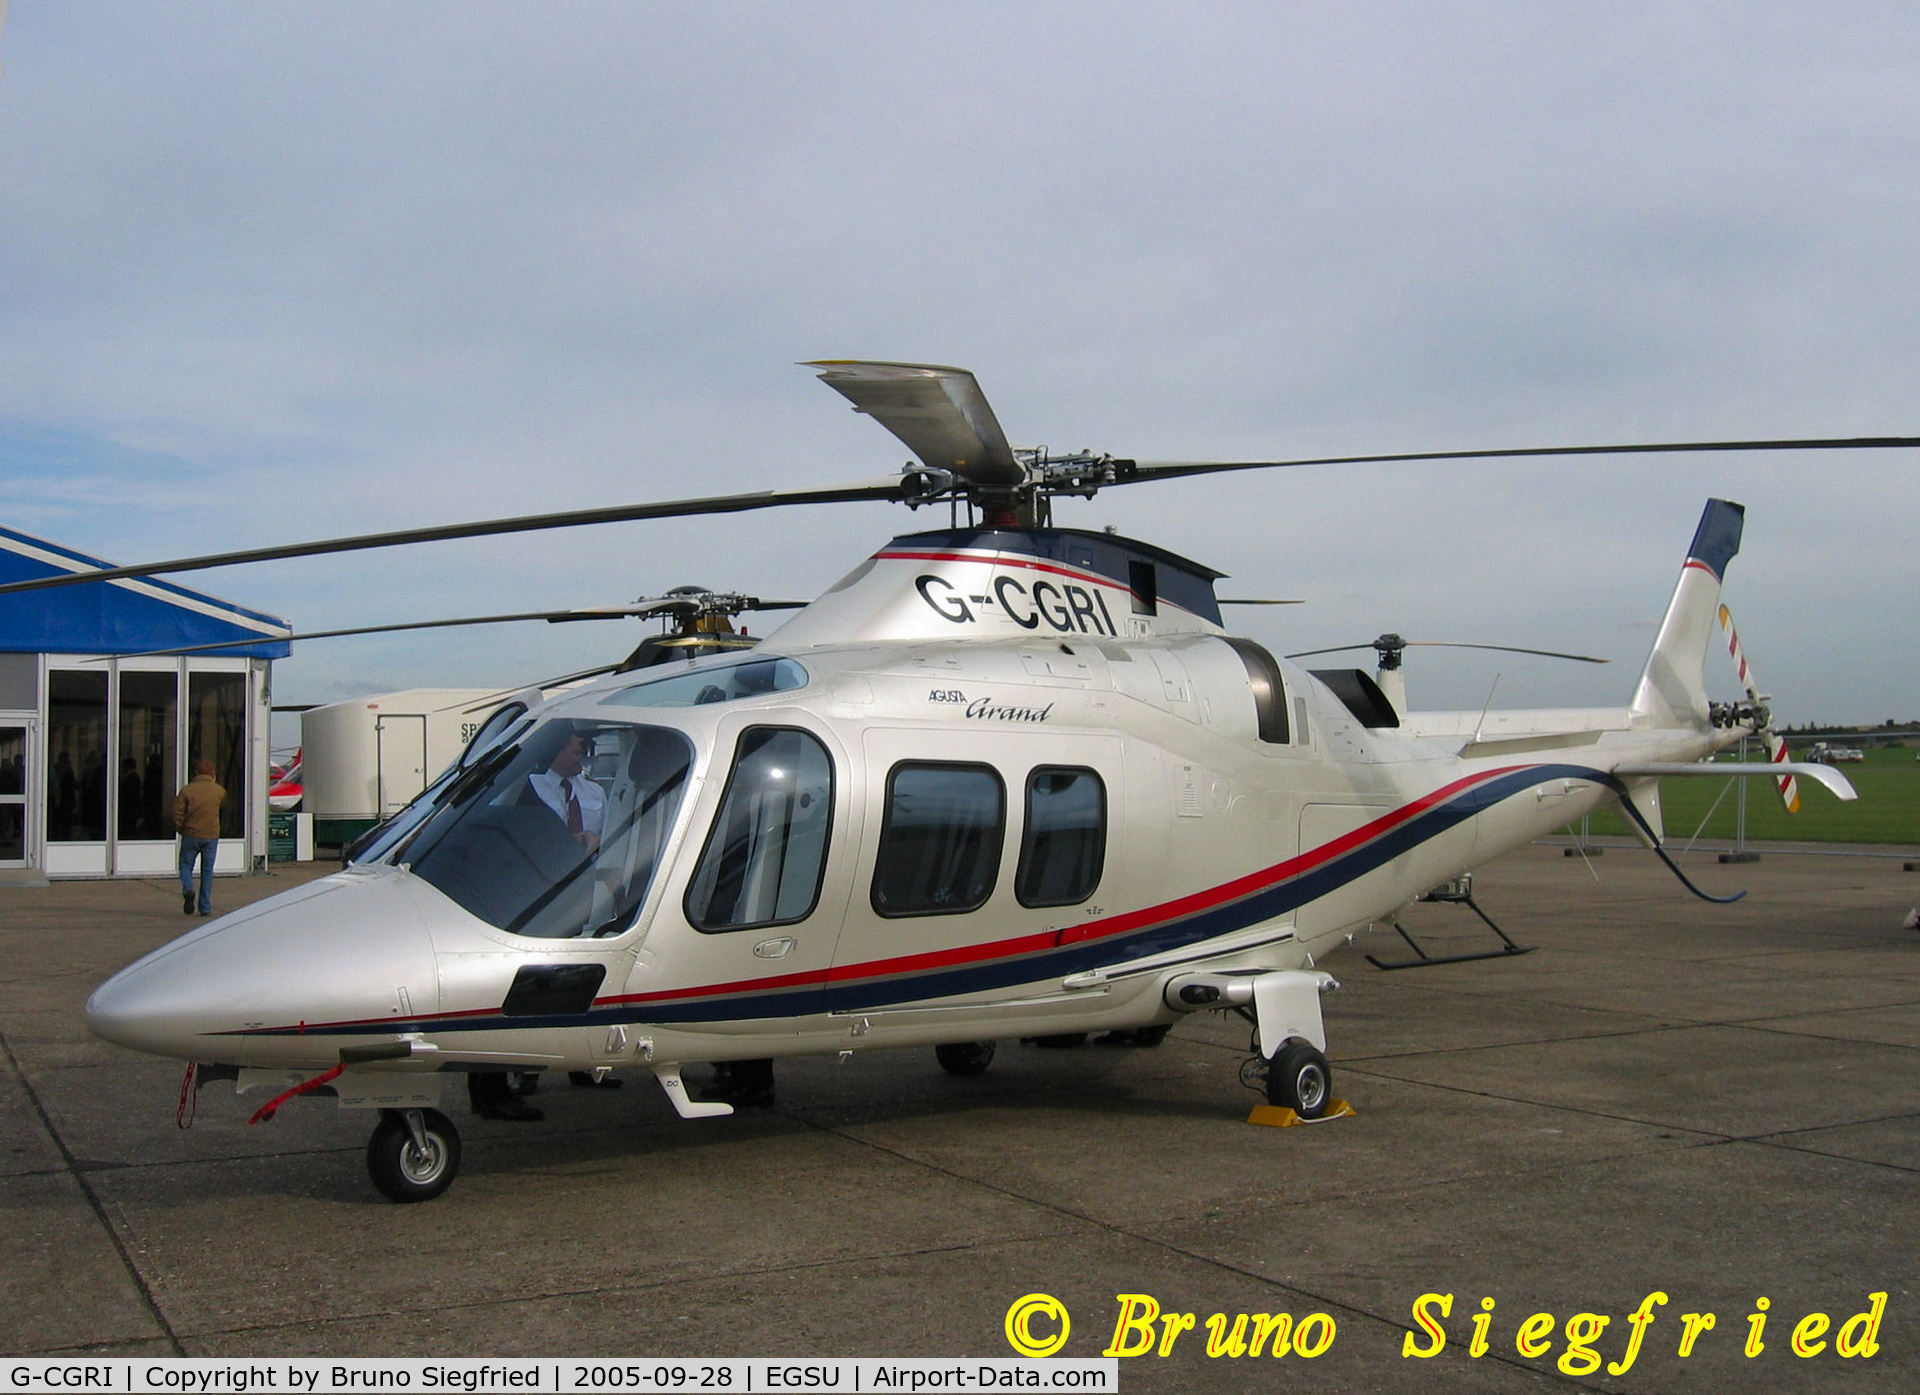 G-CGRI, 2005 Agusta A-109S Grand C/N 22003, Duxford Helitech